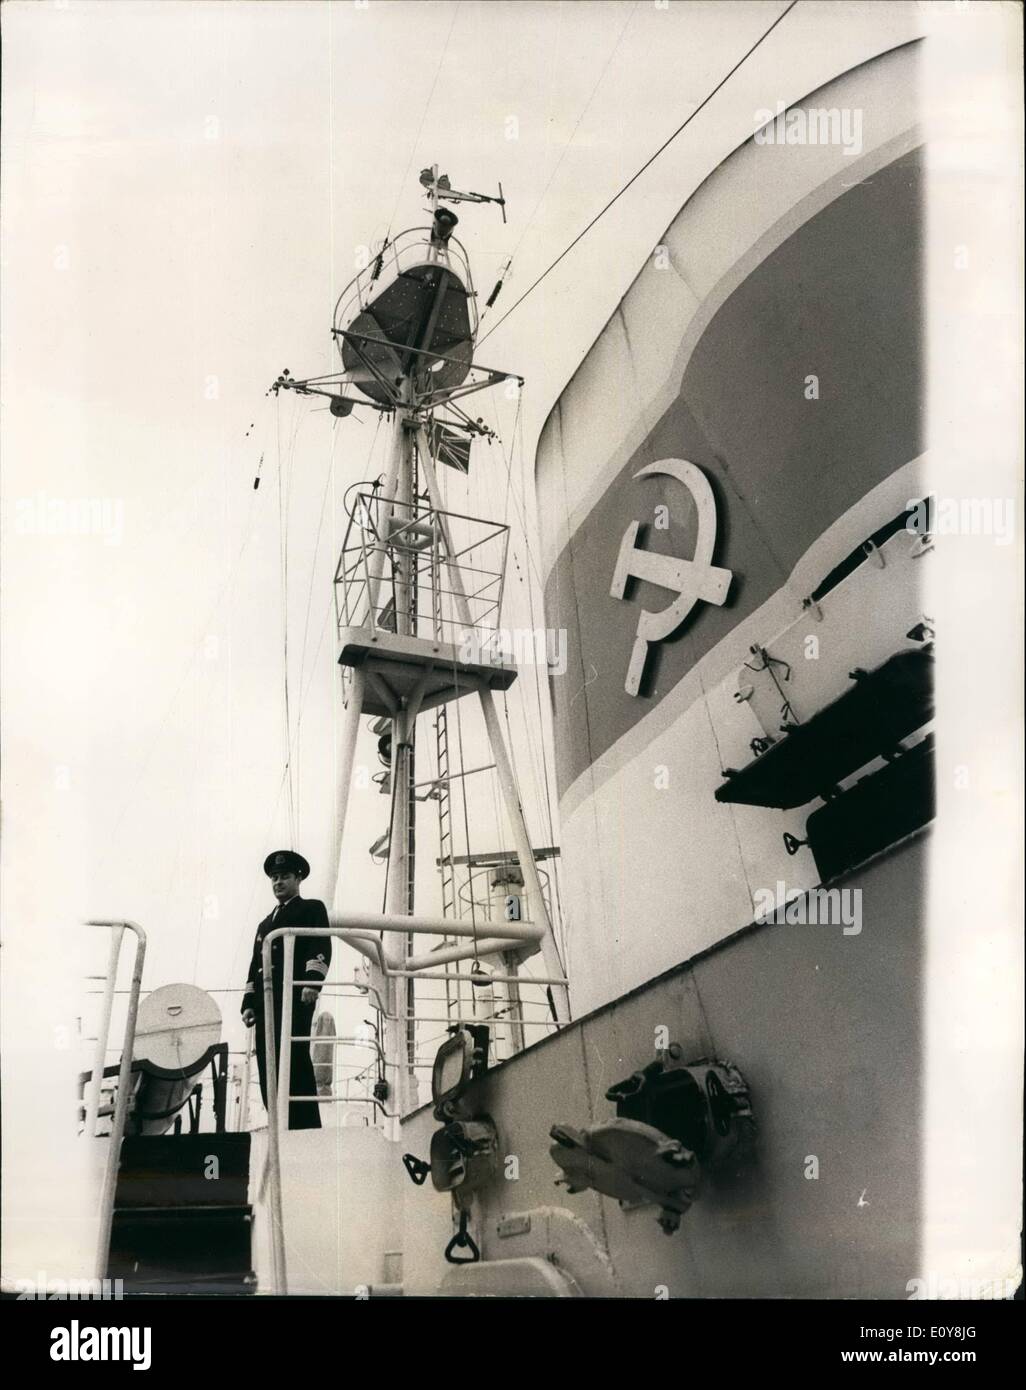 Febrero 02, 1969 - el buque ruso Persey III, 3.800 toneladas, diseñado para estudiar el comportamiento de los peces y de sus condiciones ambientales, ha atracado en el Shoreham para una visita de buena voluntad para que coincidiera con la primera exposición internacional de oceanología en Brighton. La exposición está abierta por el Sr.Benn, Ministro de tecnología. El Persey III, que será en el hotel Shoreham durante una semana, pertenece al Instituto de Investigación Polar de la pesca marina y oceanografía en Murmansk. Su equipamiento incluye una sección de buceo y un laboratorio equipado con una cámara de descompresión Foto de stock